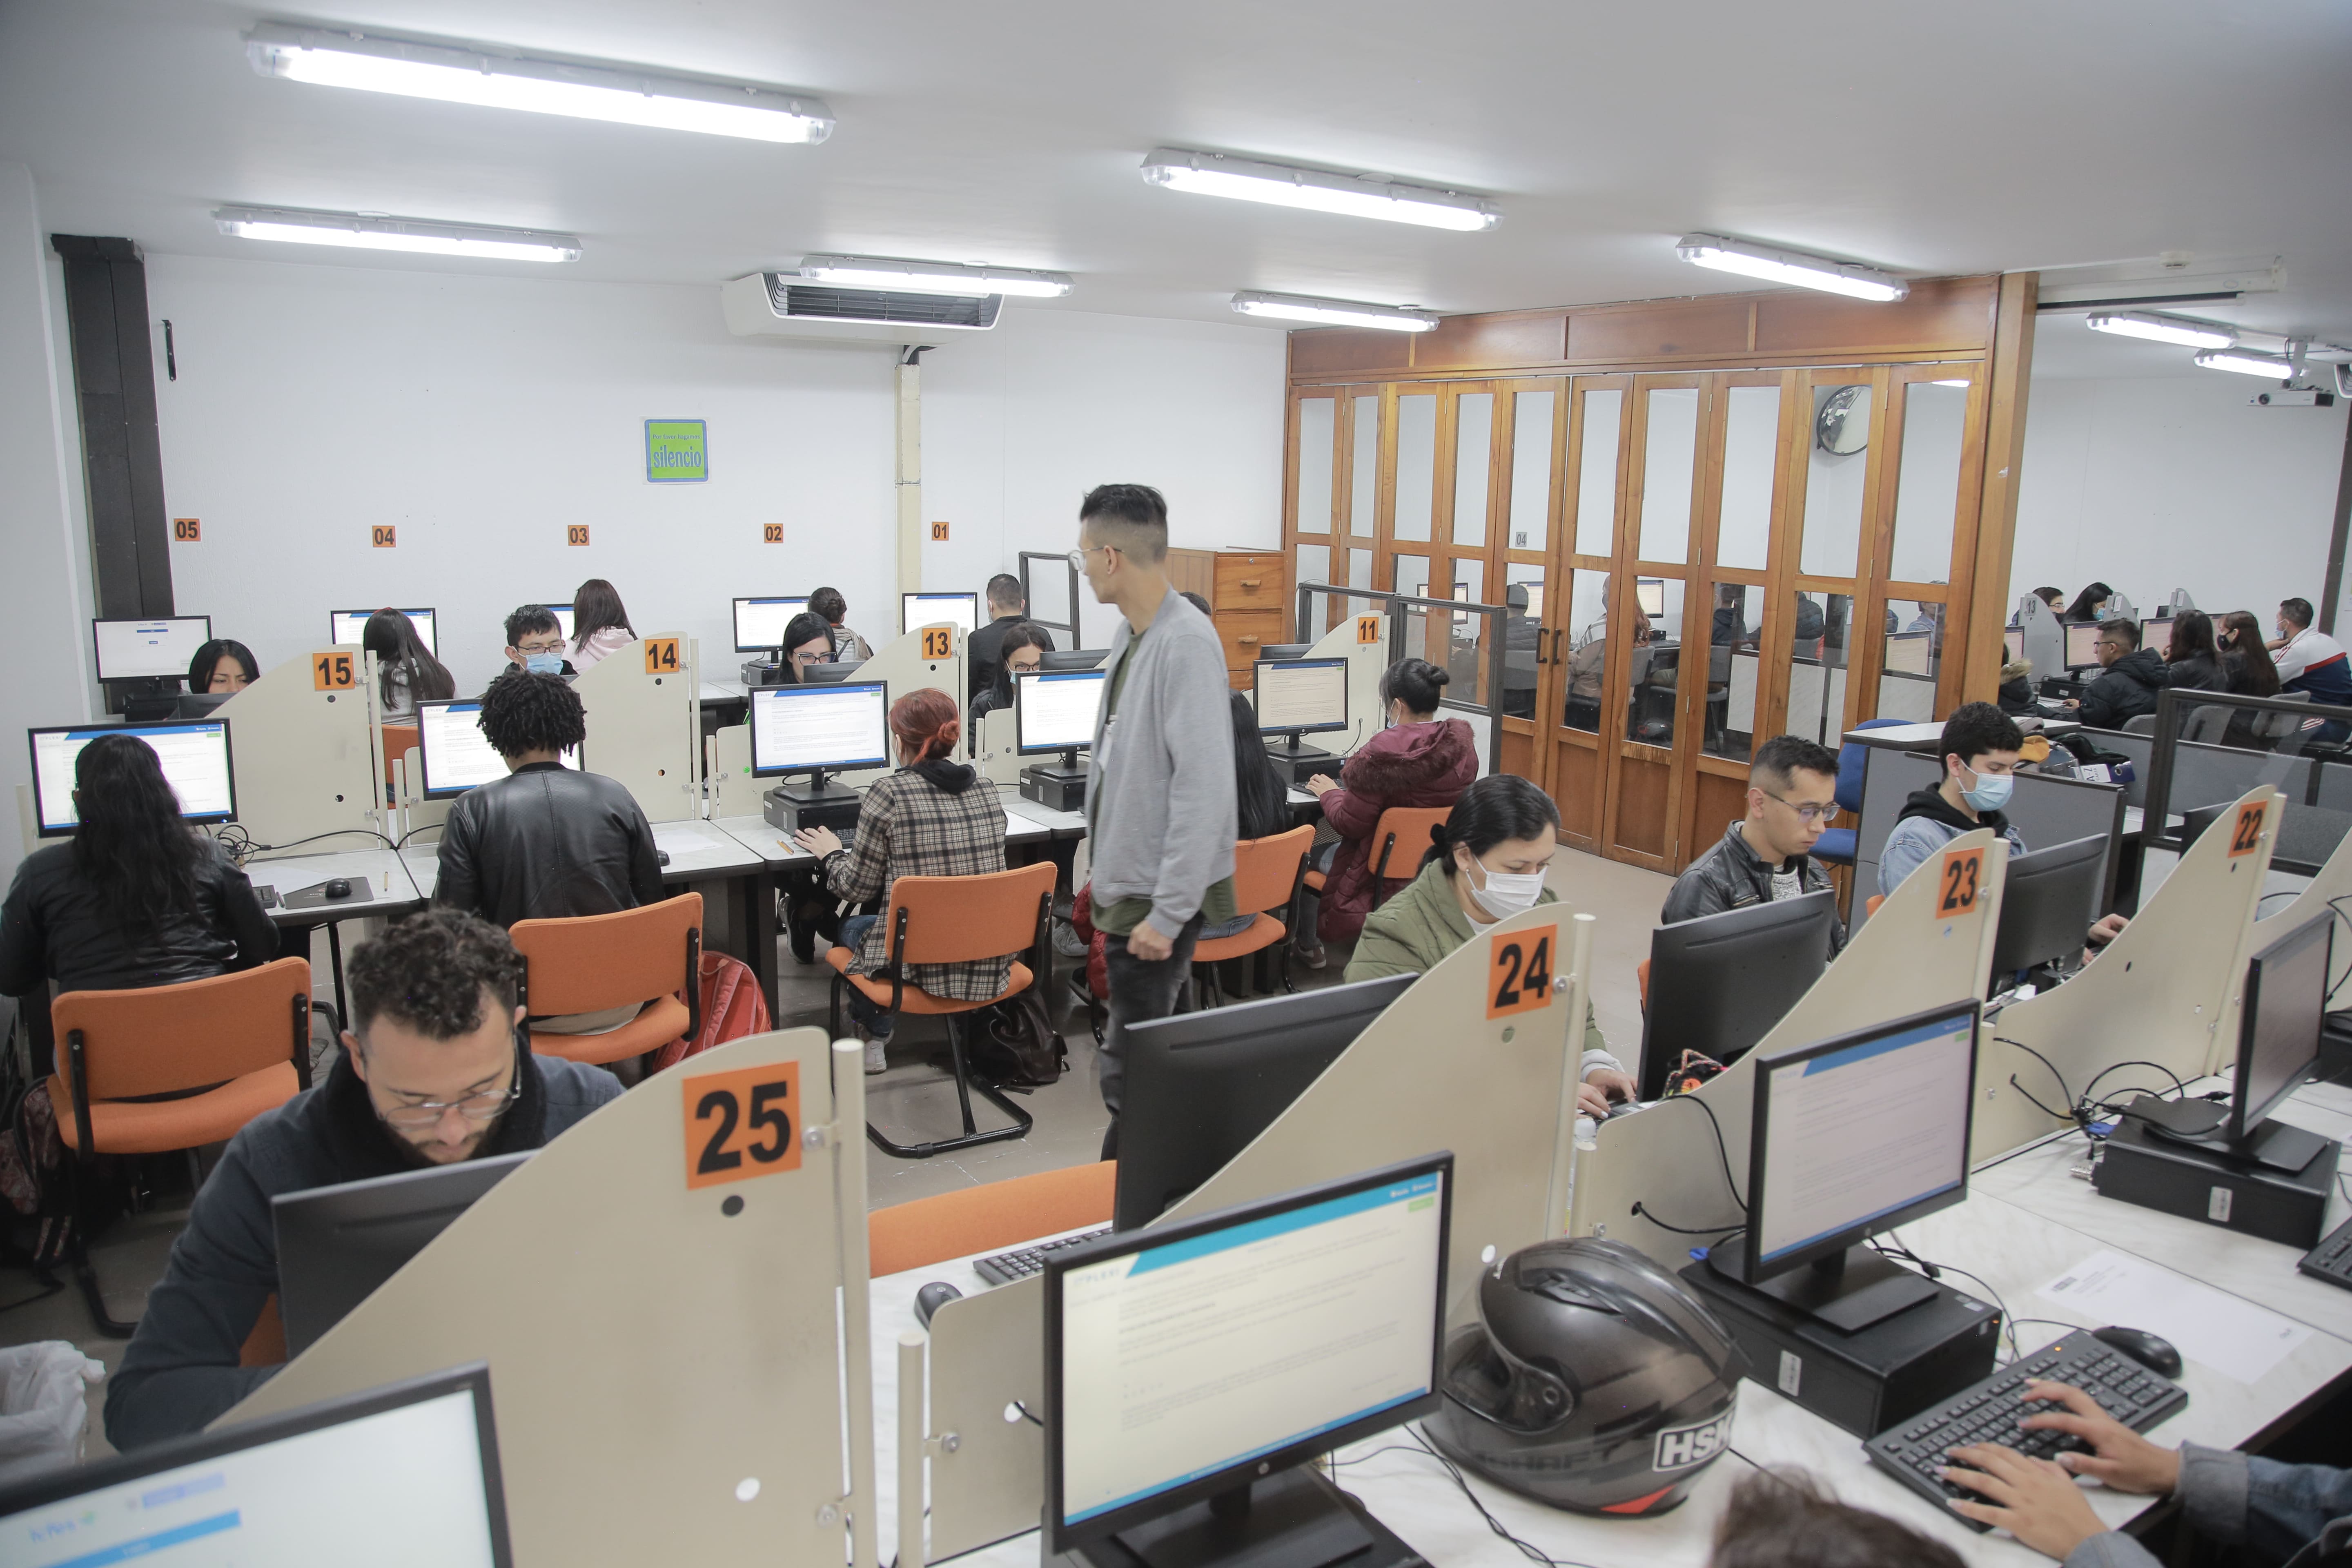 Jóvenes sentados en salón de clase cada uno con computador resolviendo una prueba electrónica.